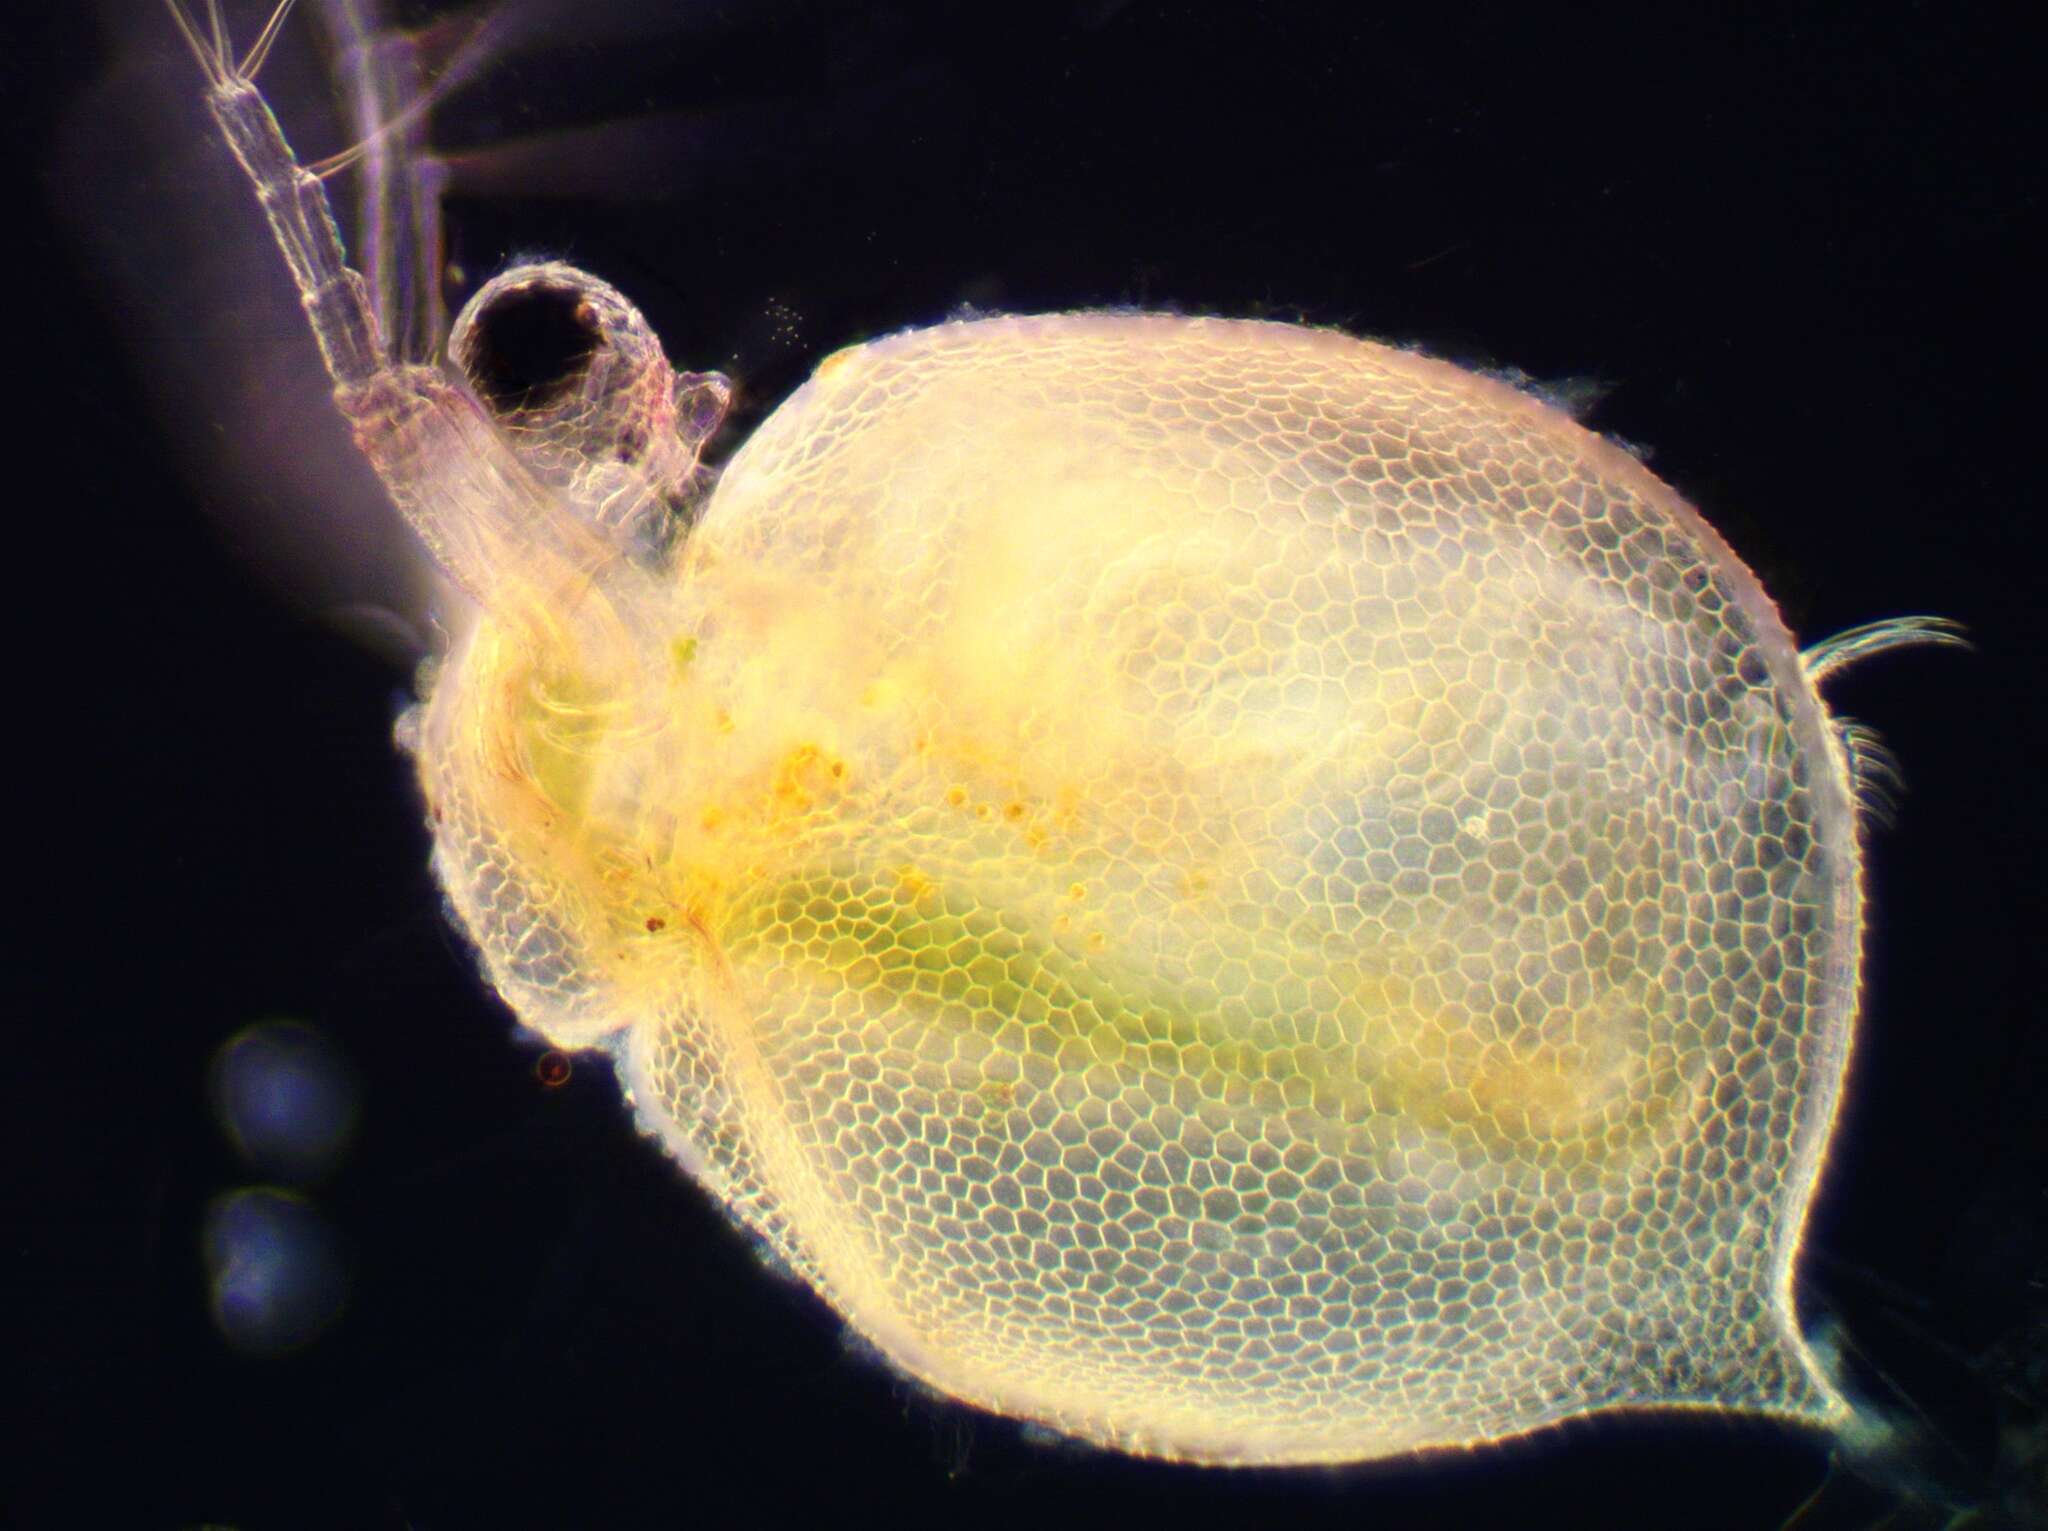 Image of reticulate waterflea